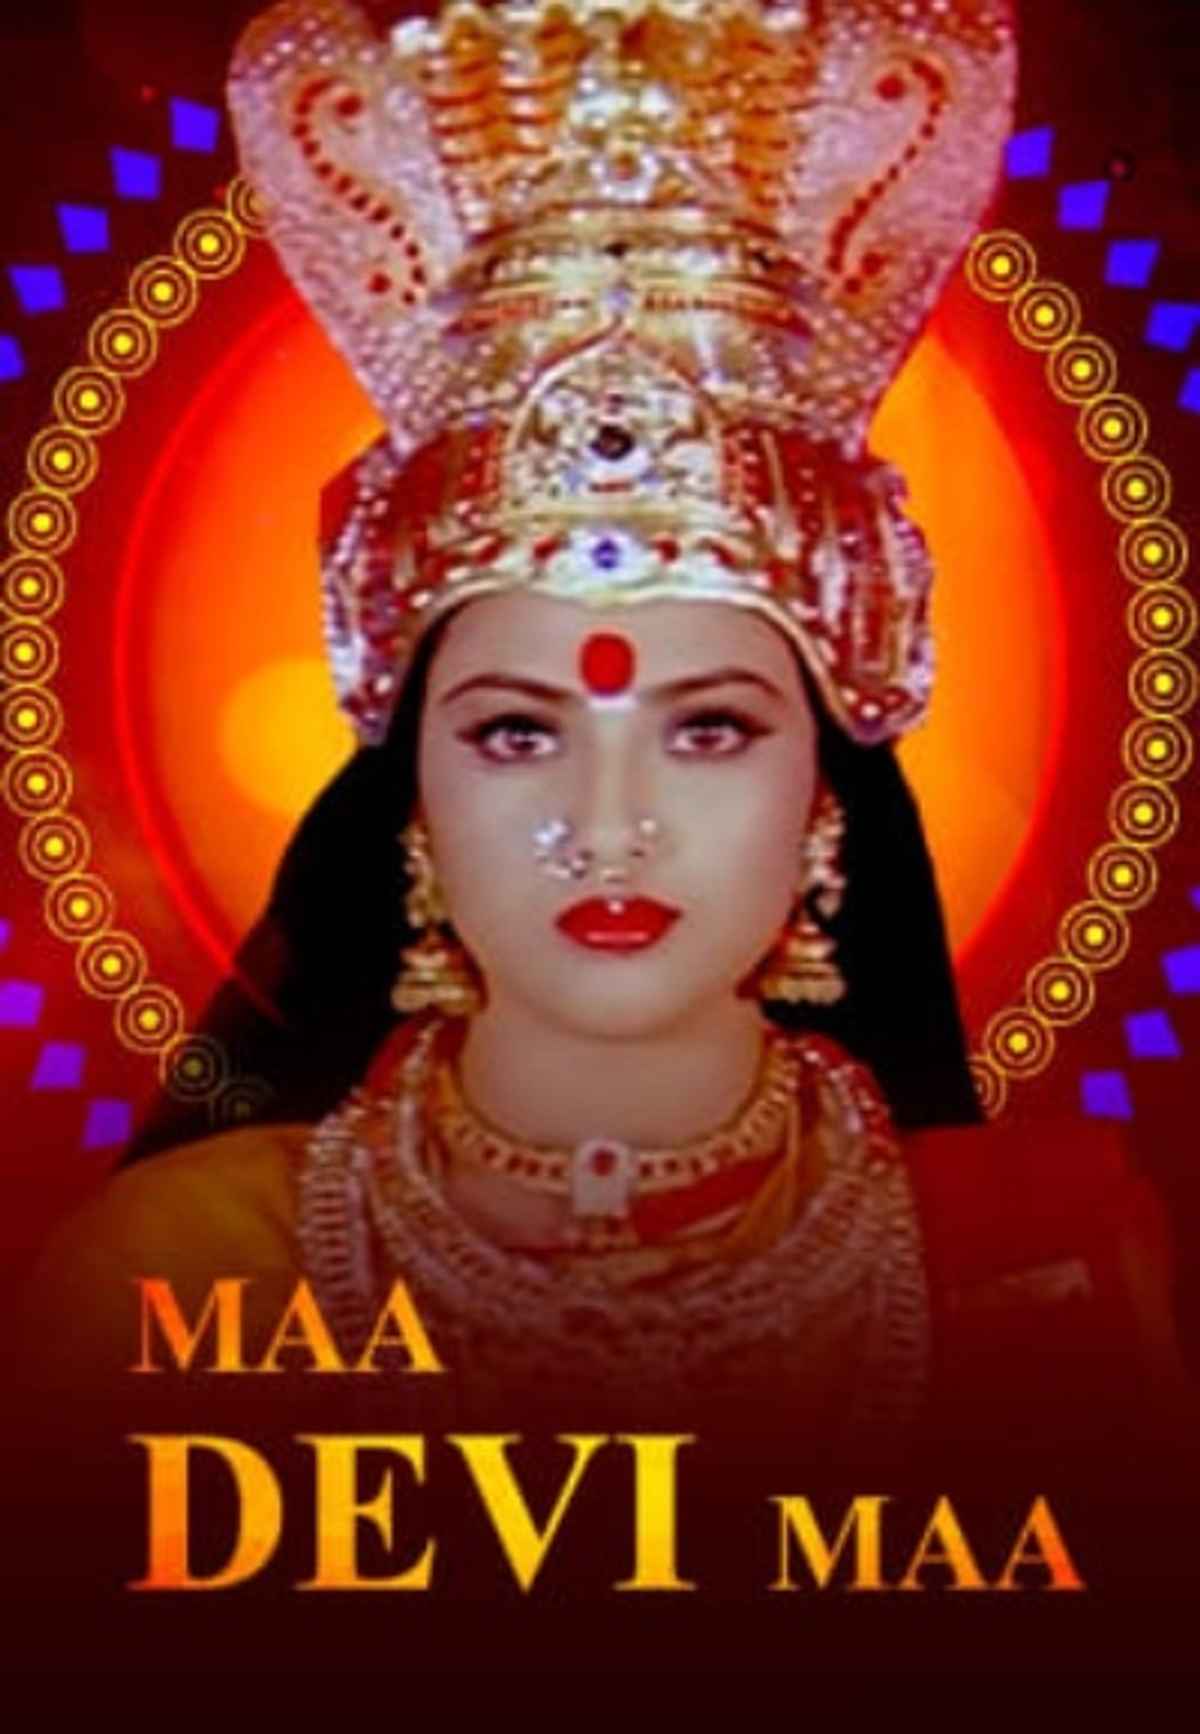 Maa Devi Maa